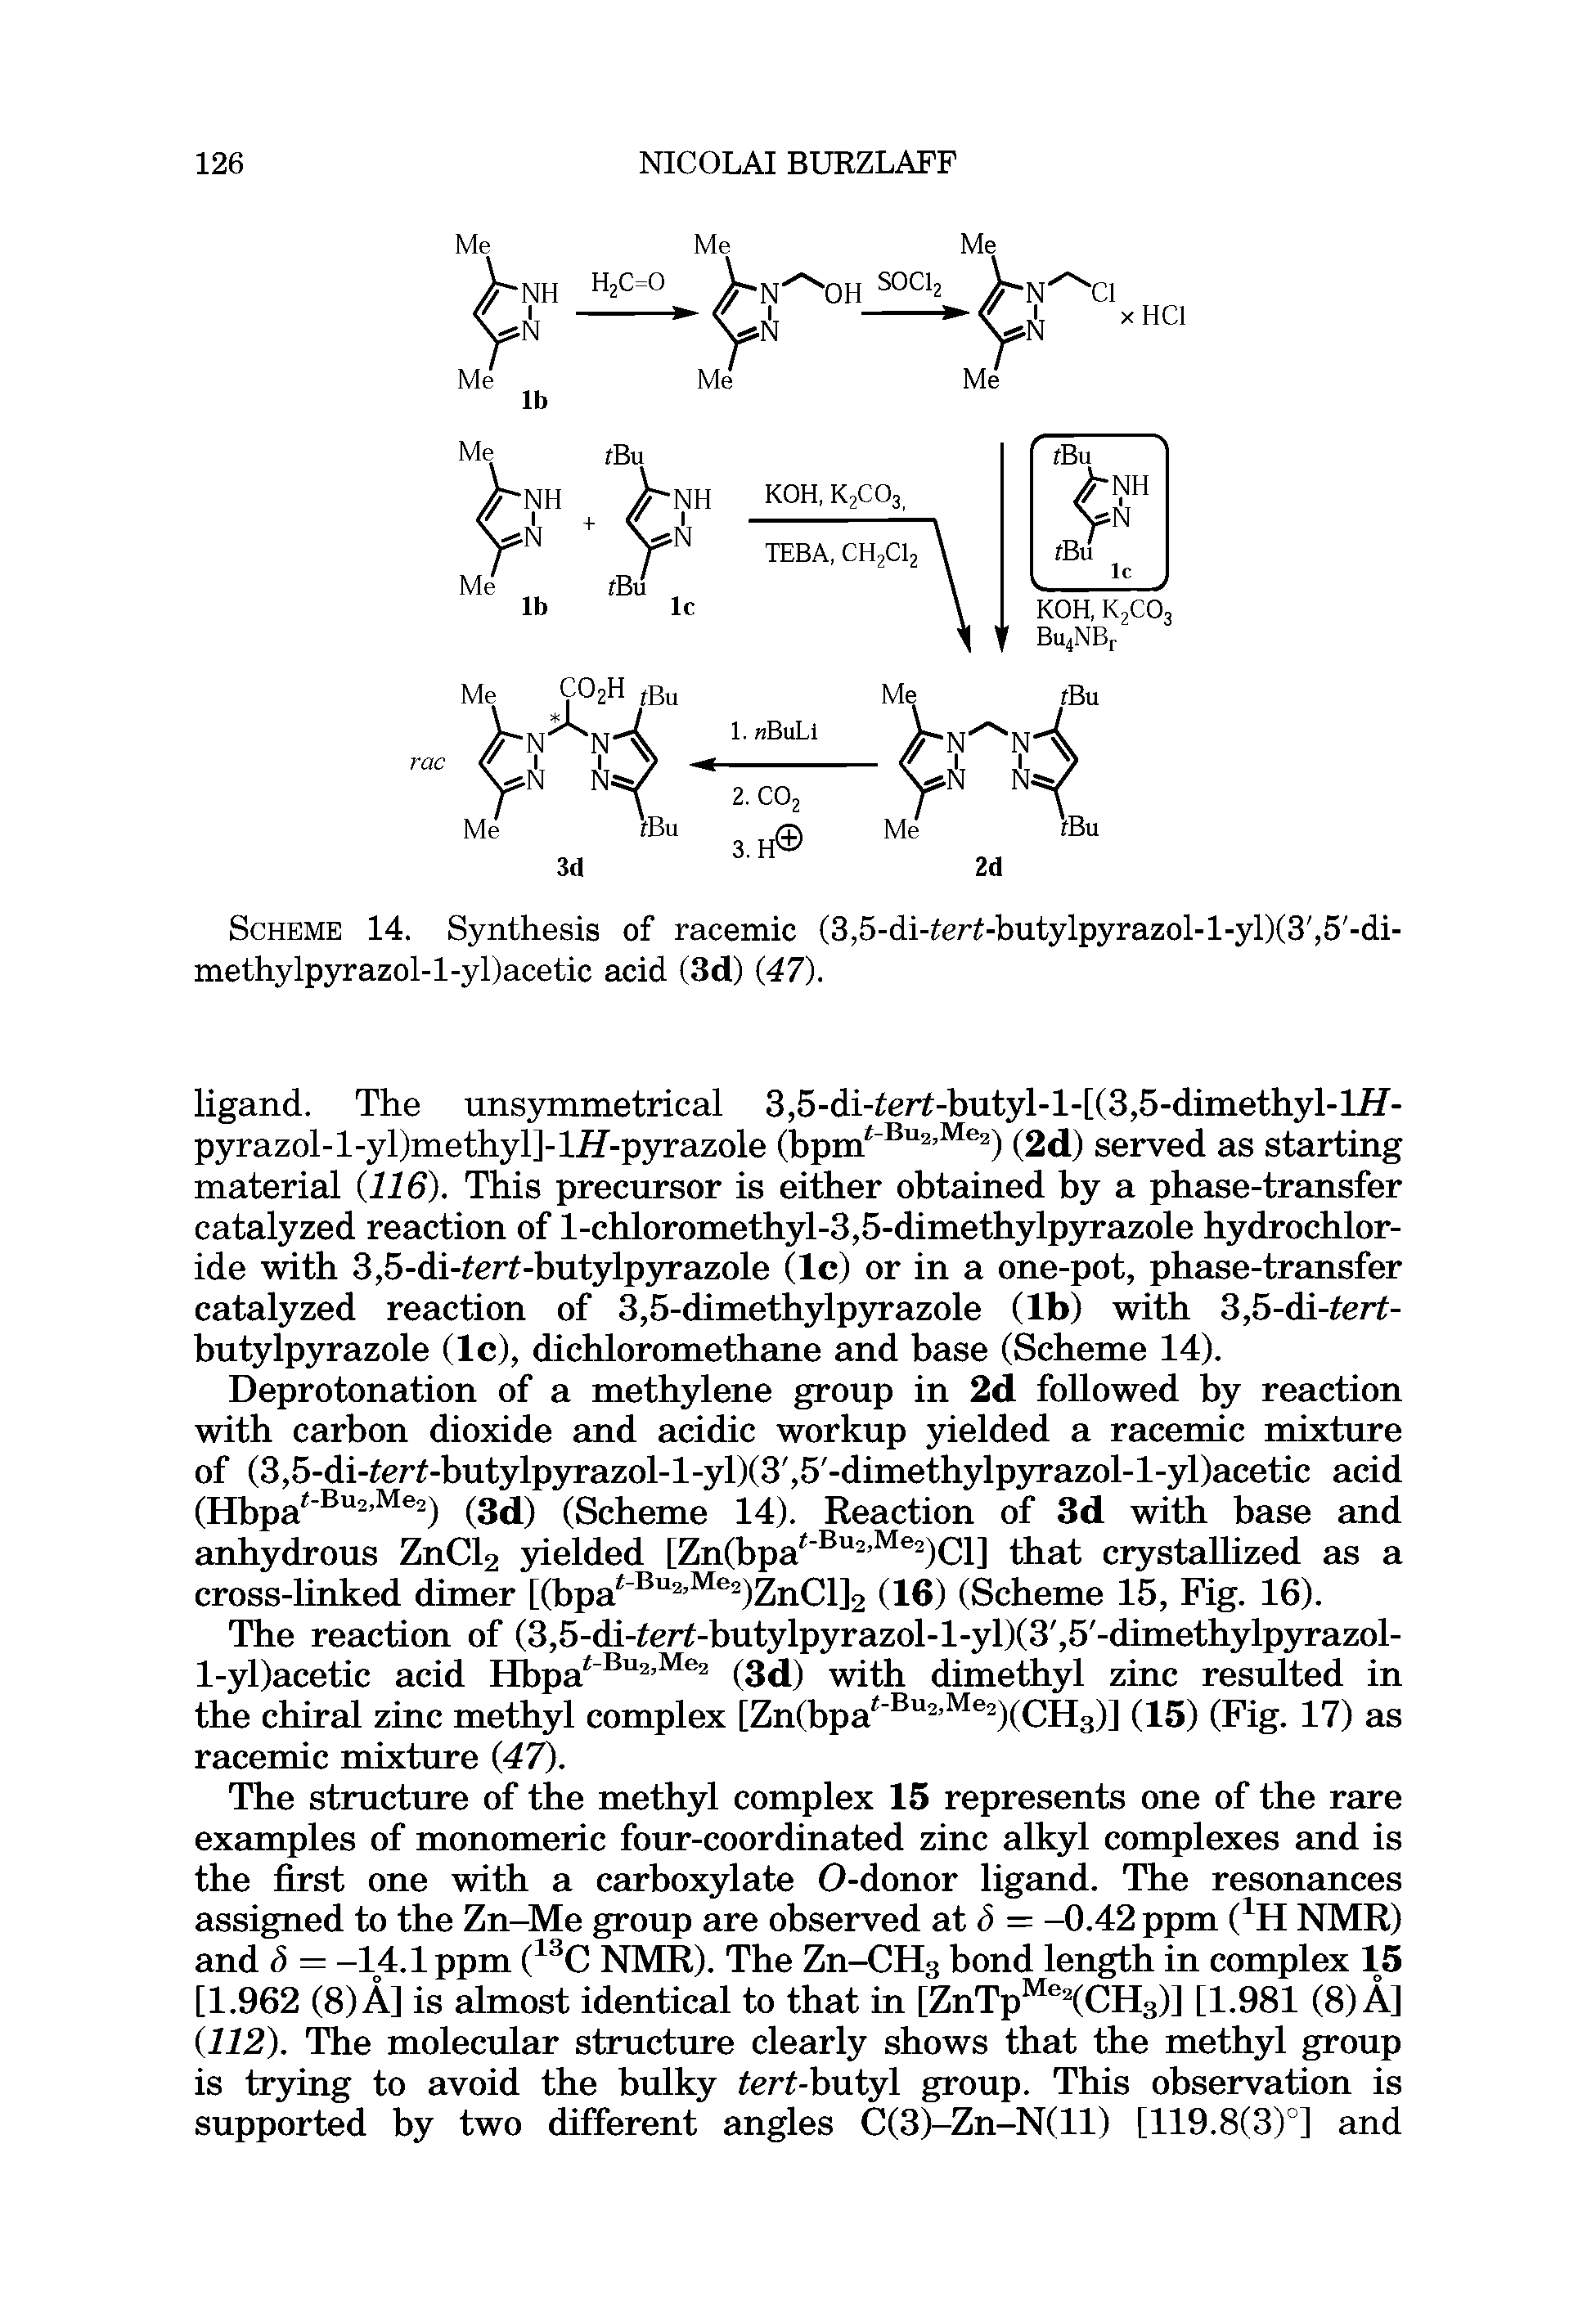 Scheme 14. Synthesis of racemic (3,5-di-ter -butylpyrazol-l-yl)(3, 5 -di-methylpyrazol-l-yl)acetic acid (3d) (47).